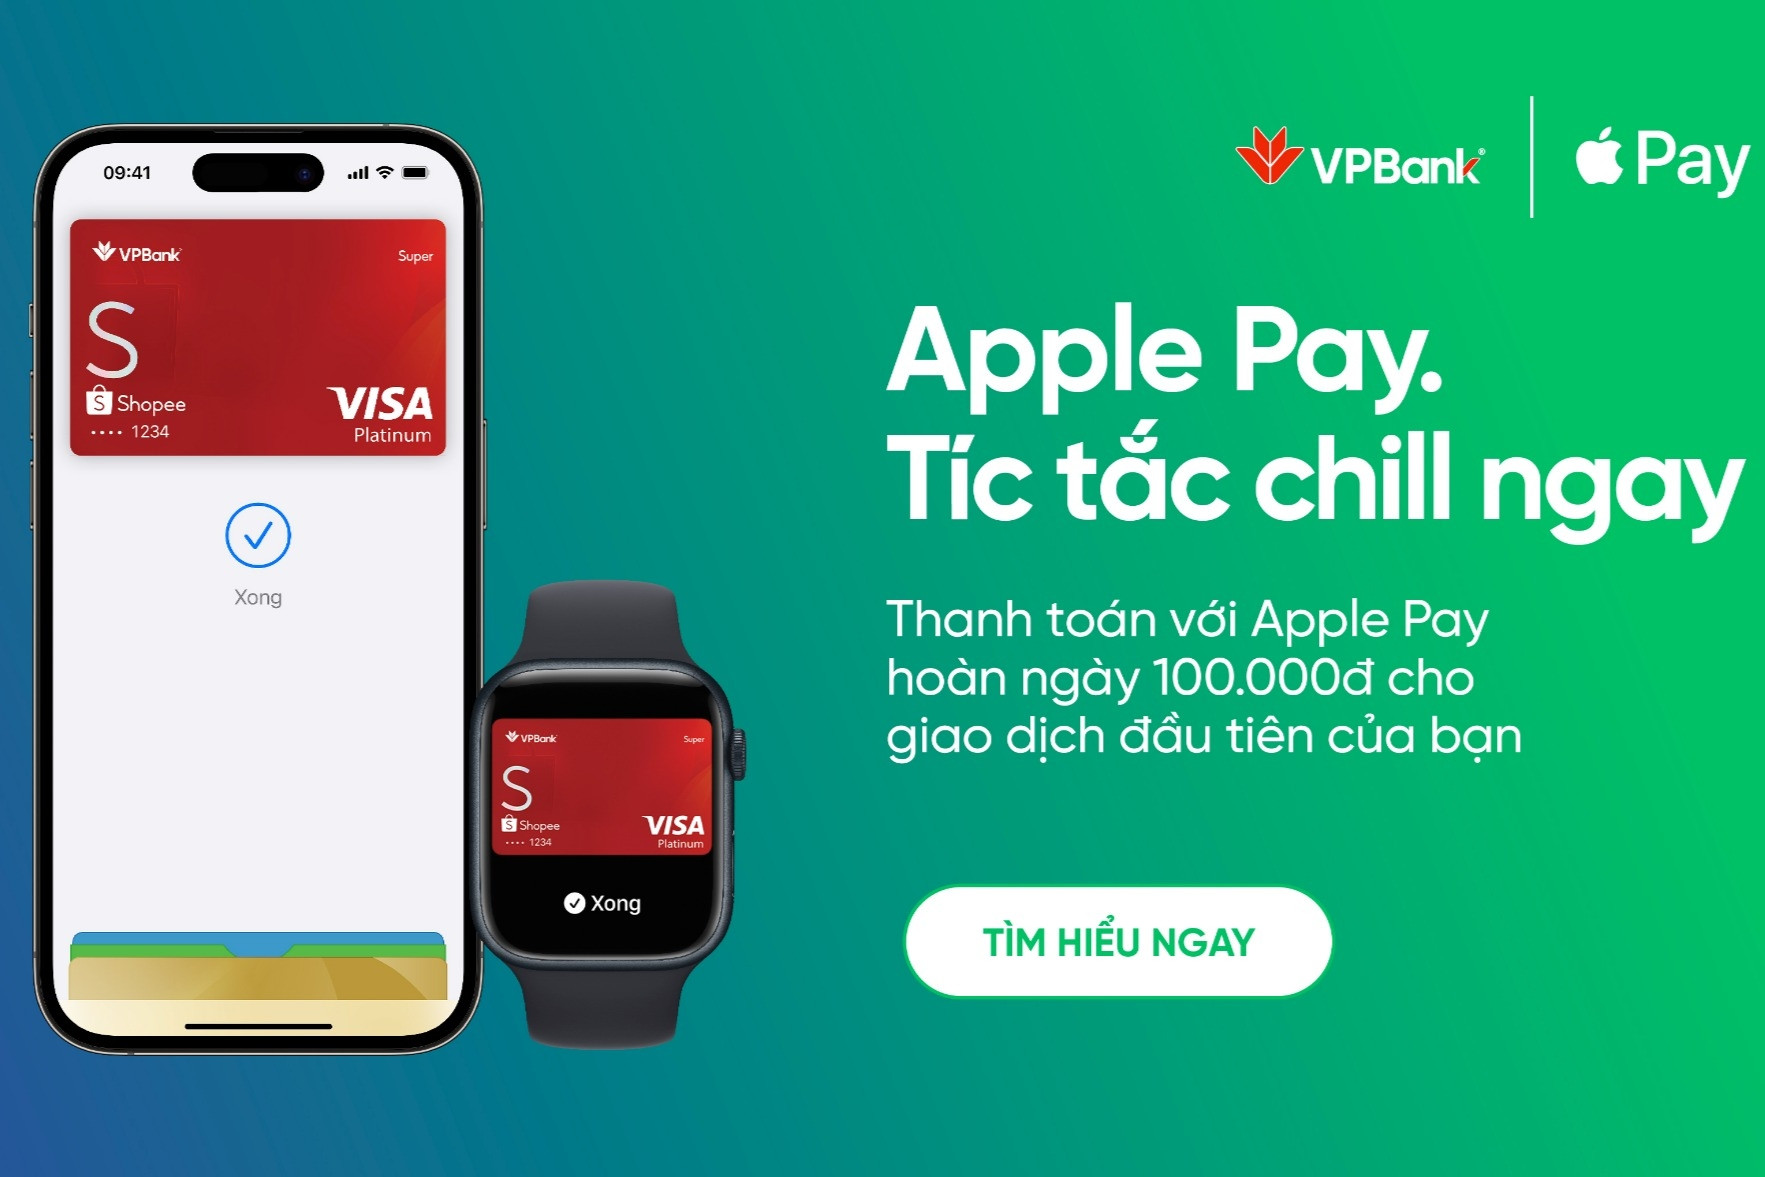 VPBank hỗ trợ tích hợp cả thẻ Mastercard và Visa trên Apple Pay